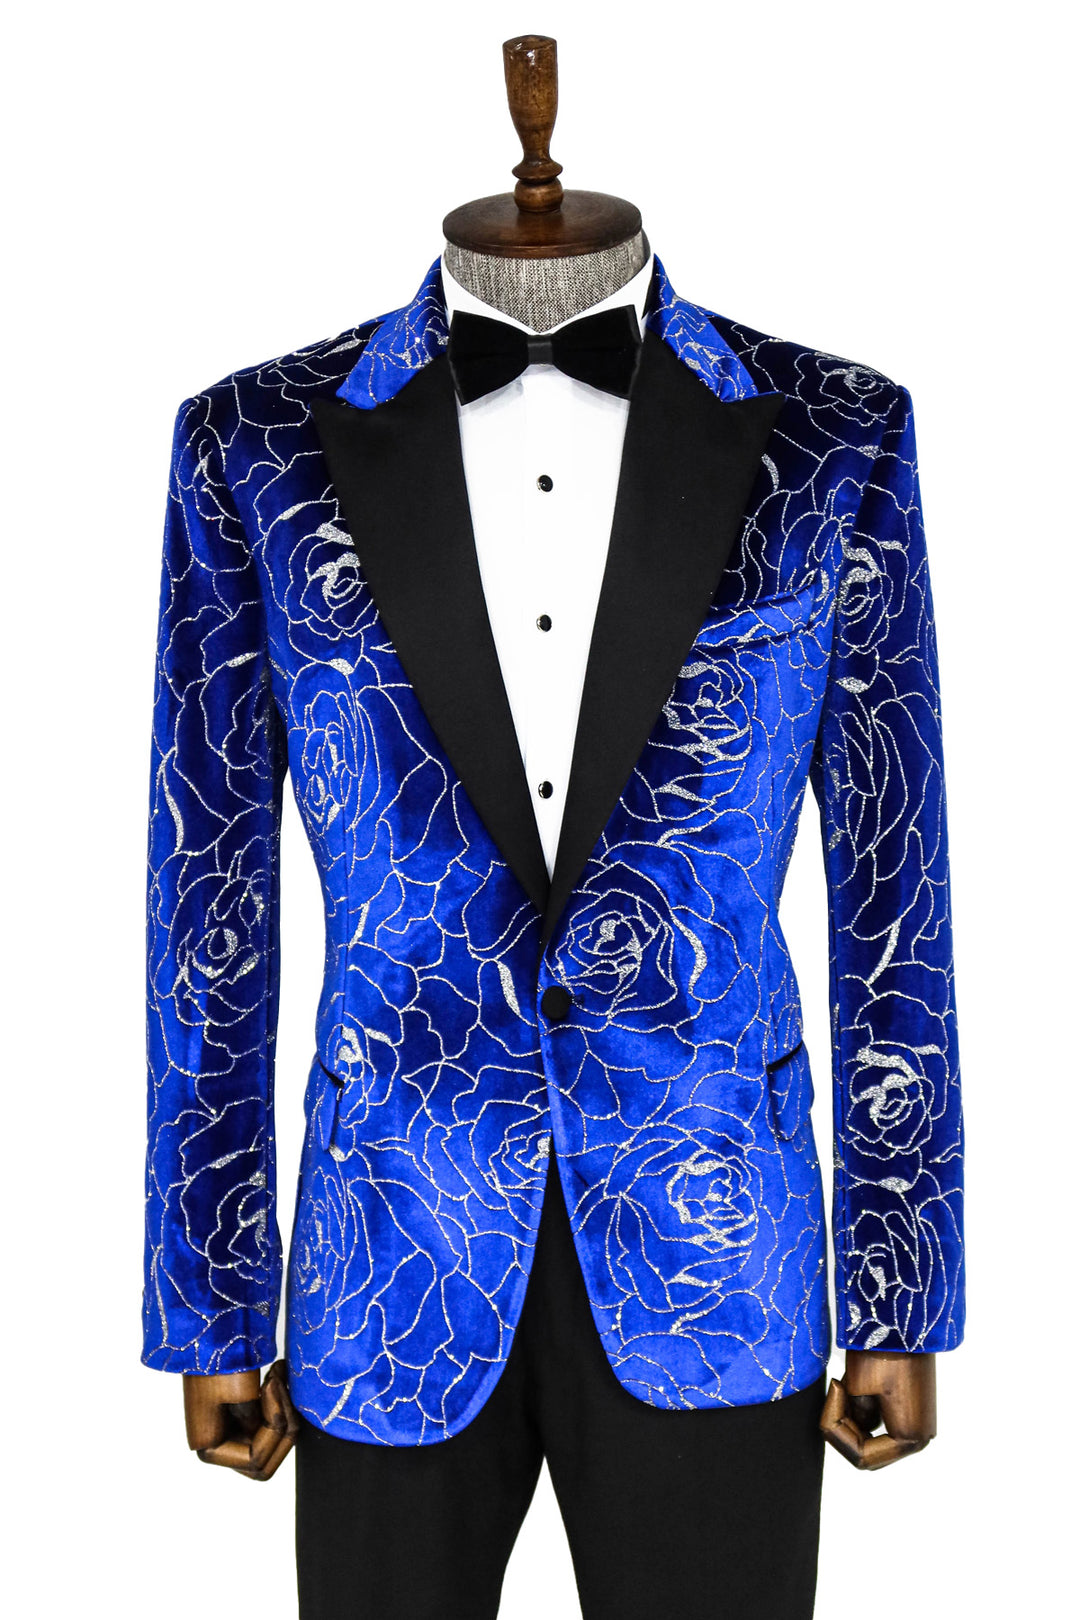 Silver Rose Patterned Over Blue Men Prom Blazer - Wessi